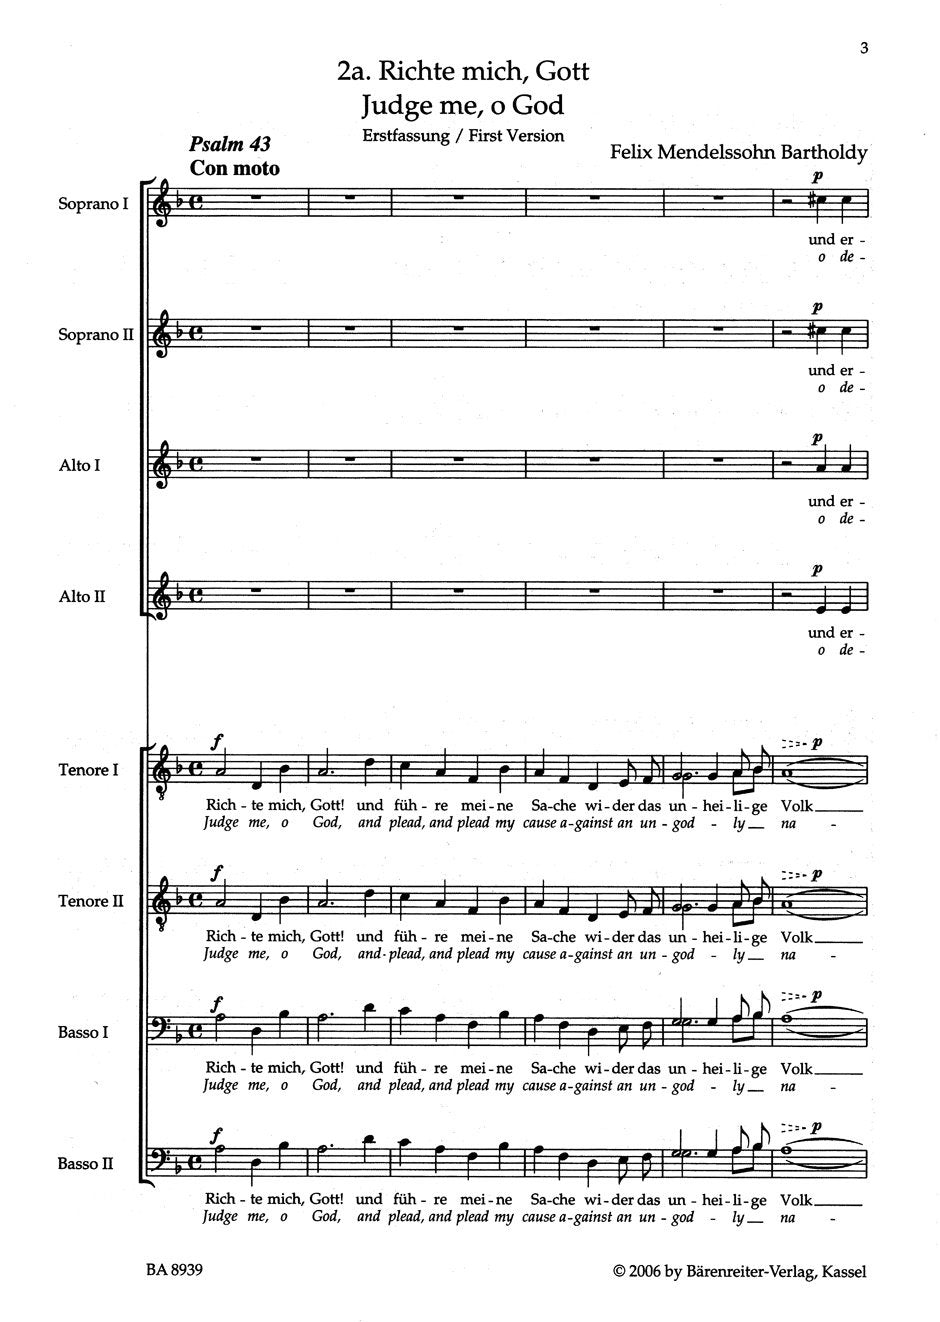 Mendelssohn: Psalm 43 - Richte mich, Gott and führe meine Sache, Op. 78, No. 2